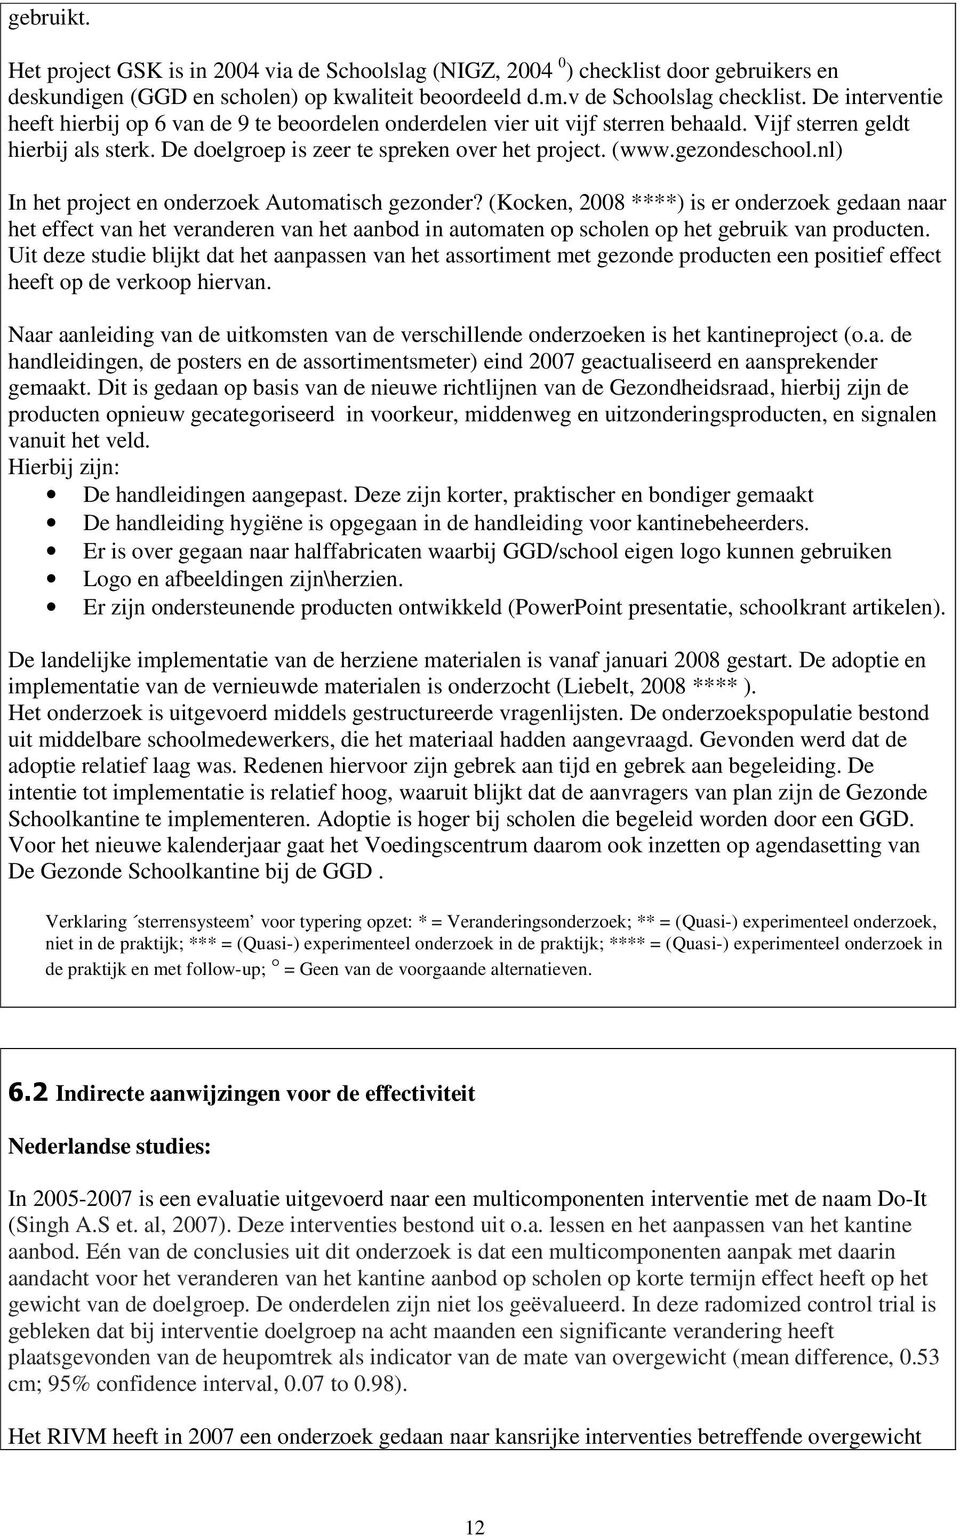 gezondeschool.nl) In het project en onderzoek Automatisch gezonder?